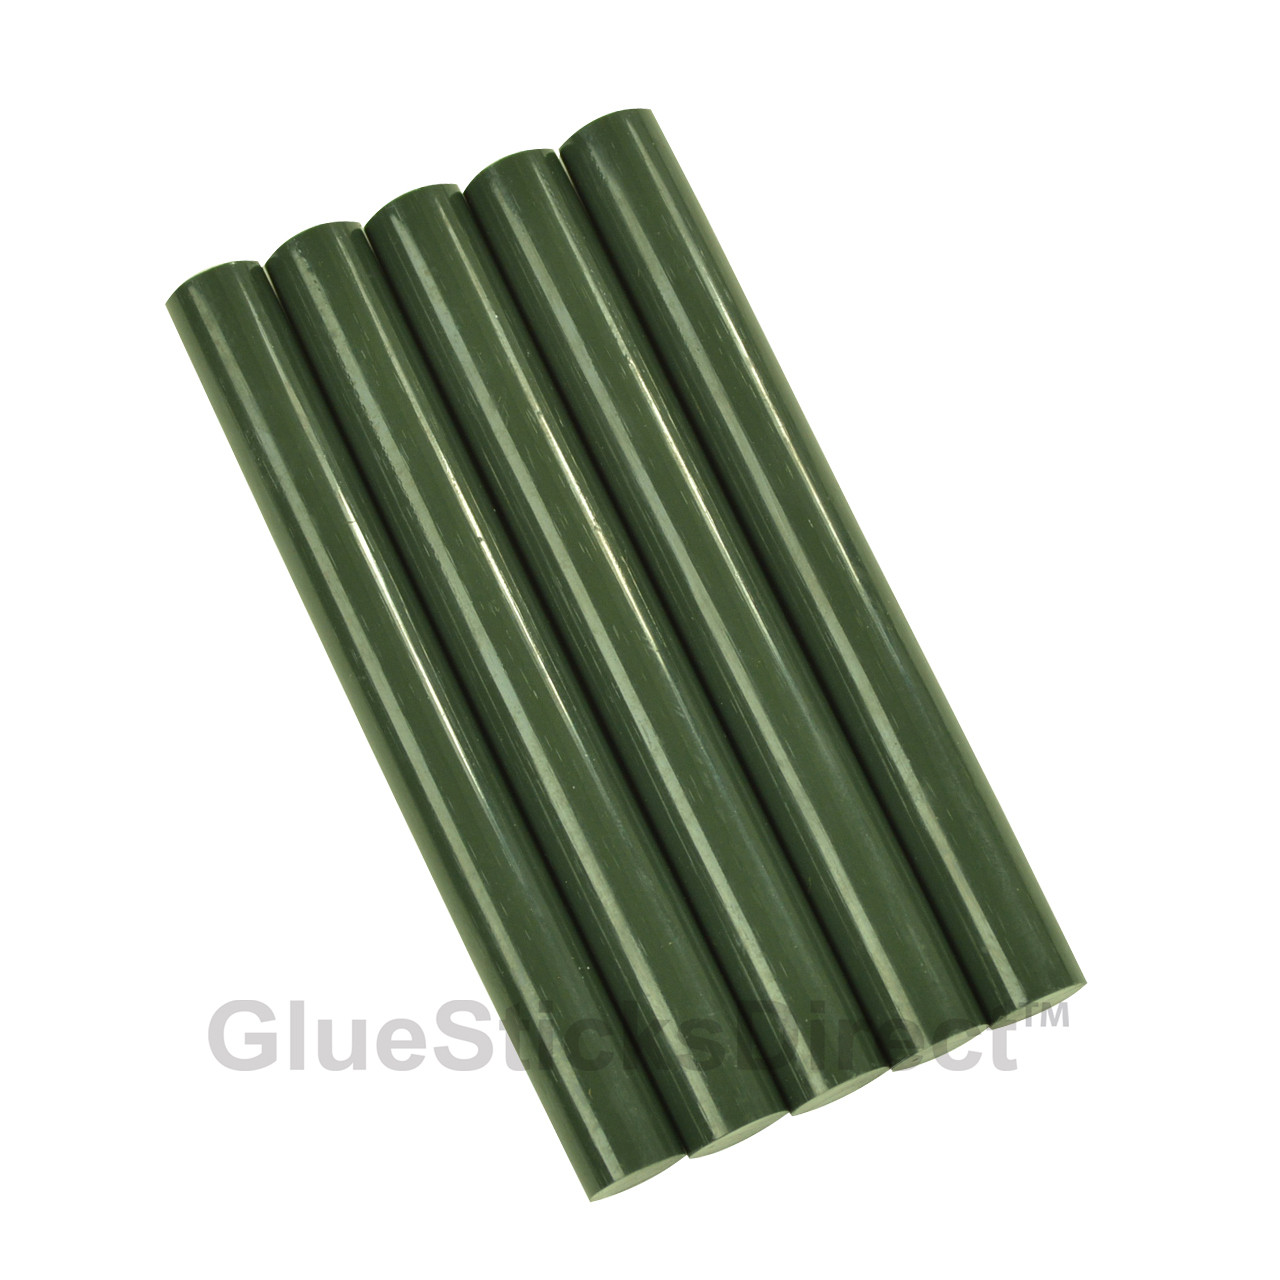 GlueSticksDirect Forest Green Colored Glue Stick mini X 4 24 Sticks -  GlueSticksDirect